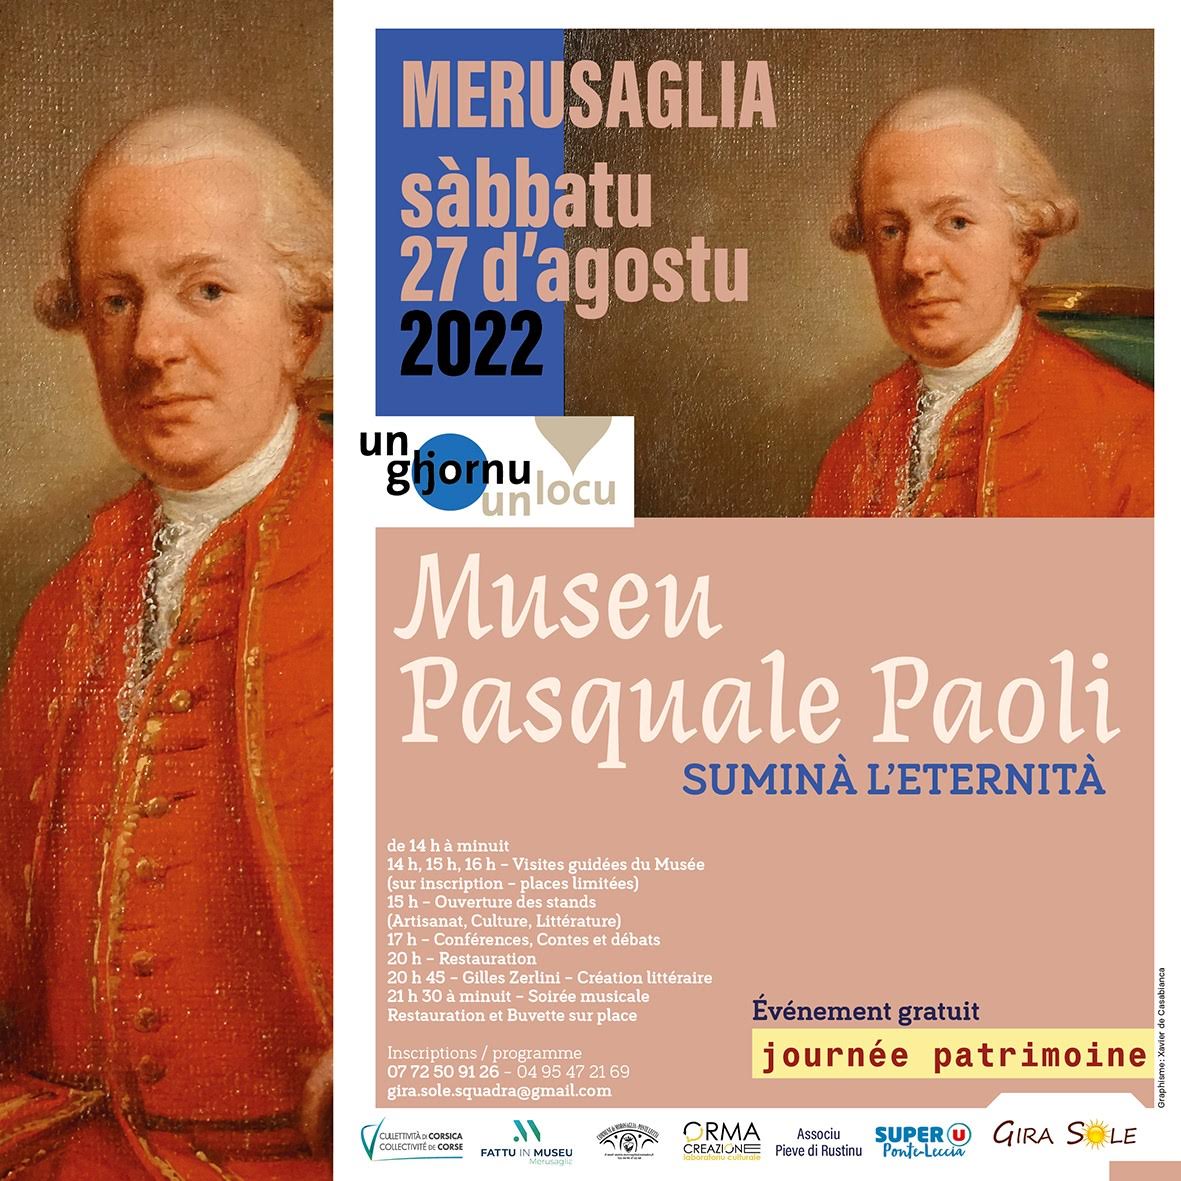 "Un ghjornu, un locu" :  journée patrimoine au Museu Pasquale Paoli de Merusaglia, ce 27 août